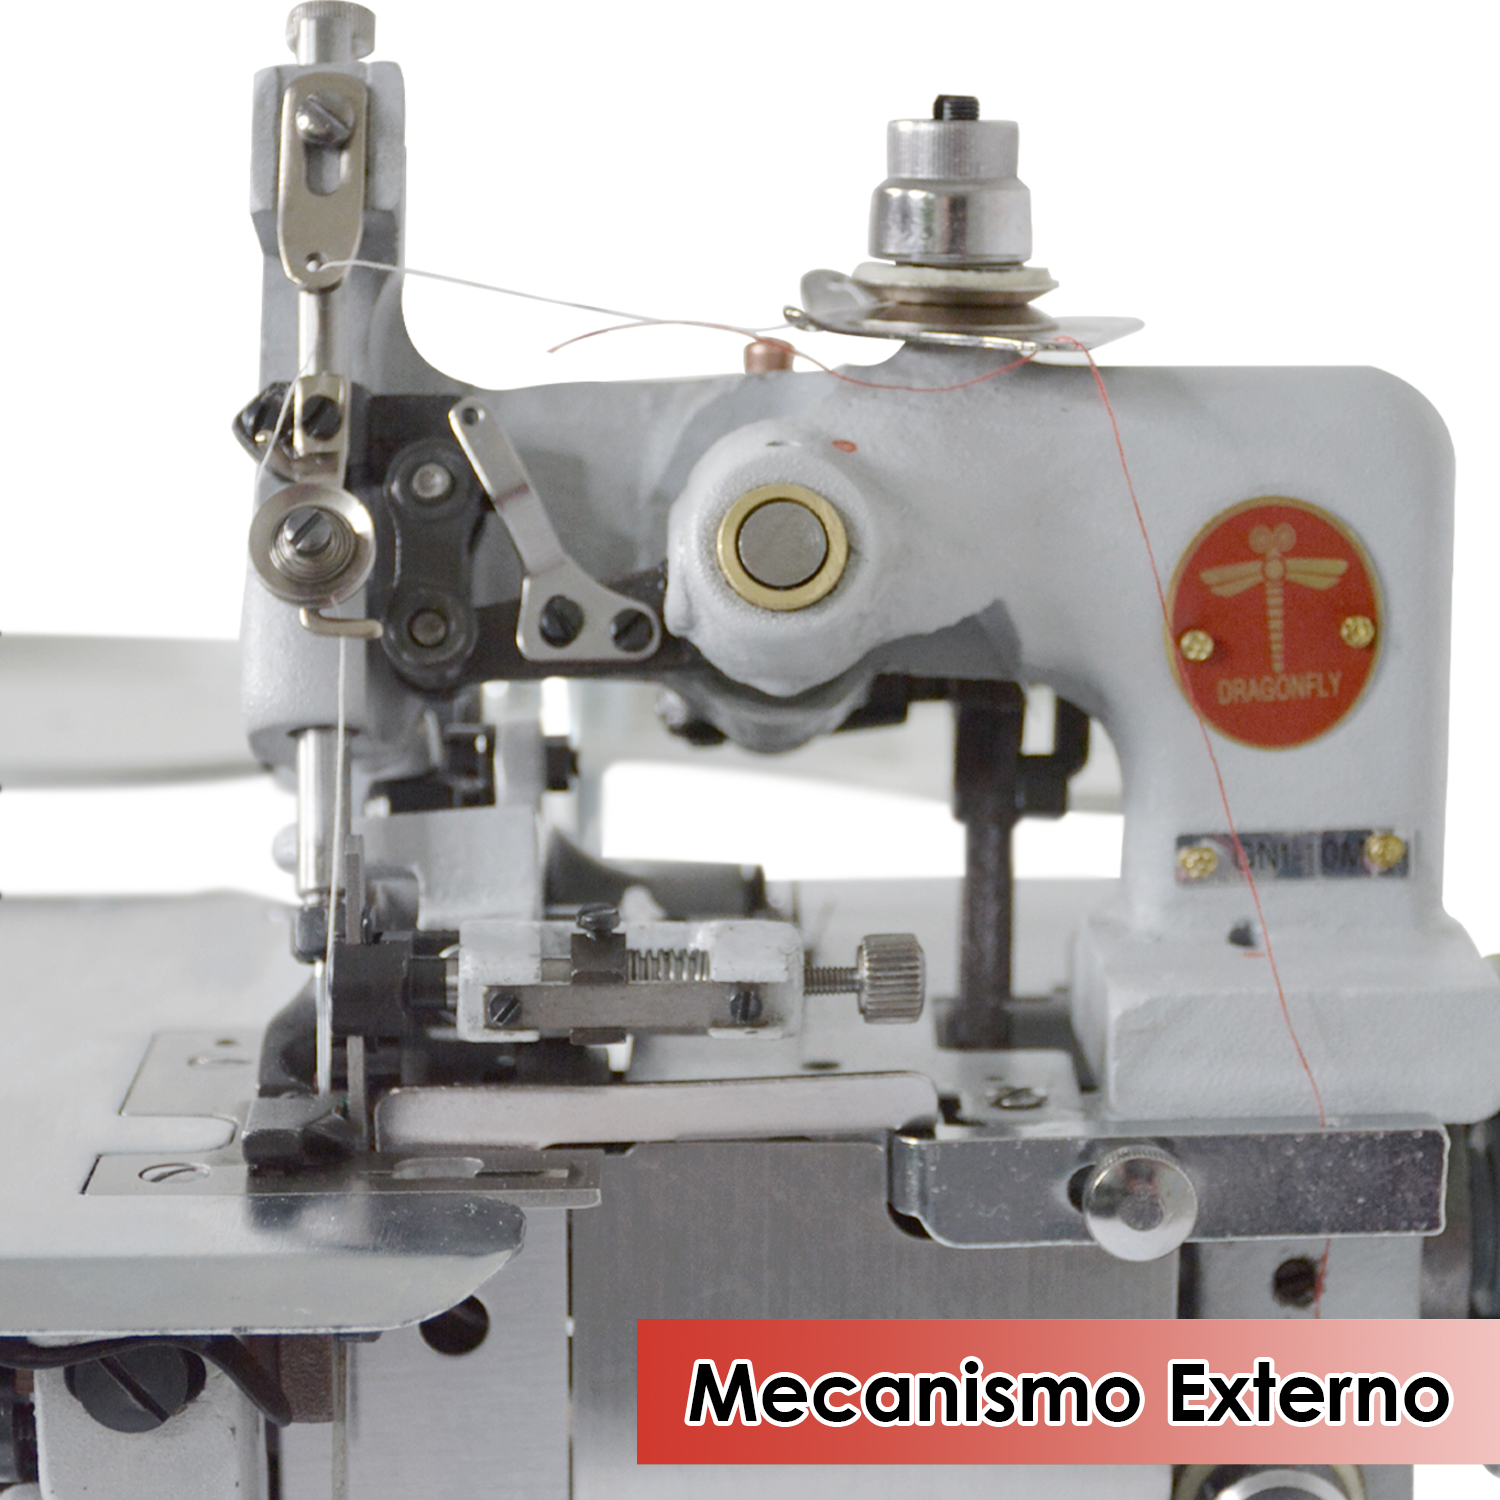 Maquina de coser over 3 hilos